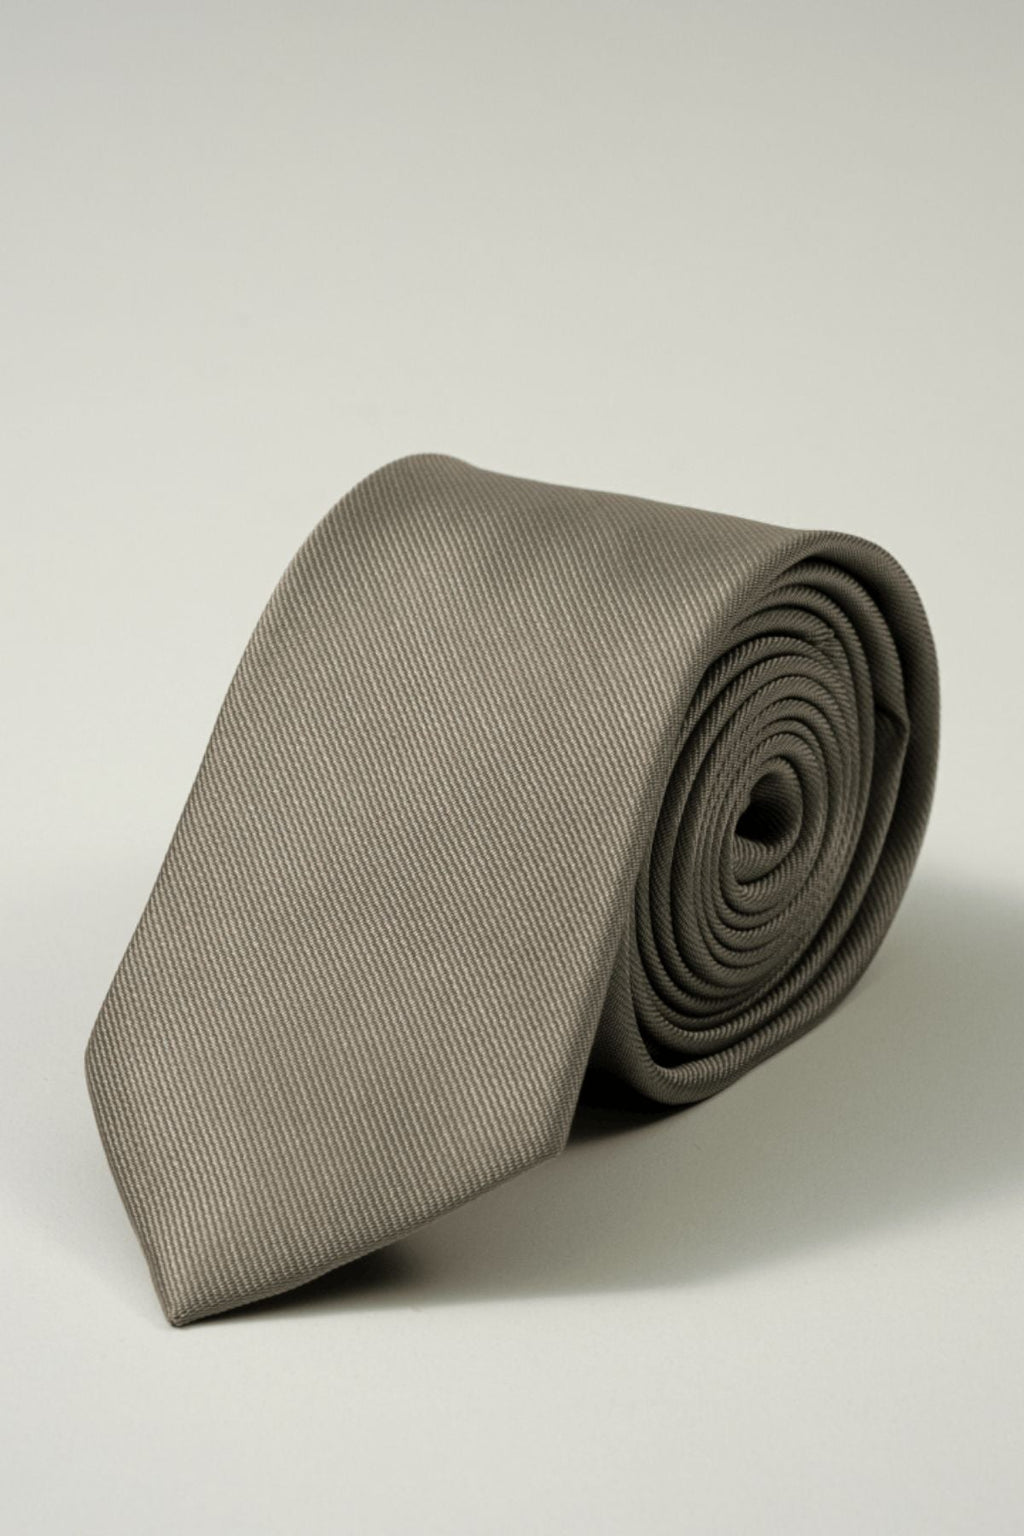 Cravatte - Pacchetto (3 pezzi)